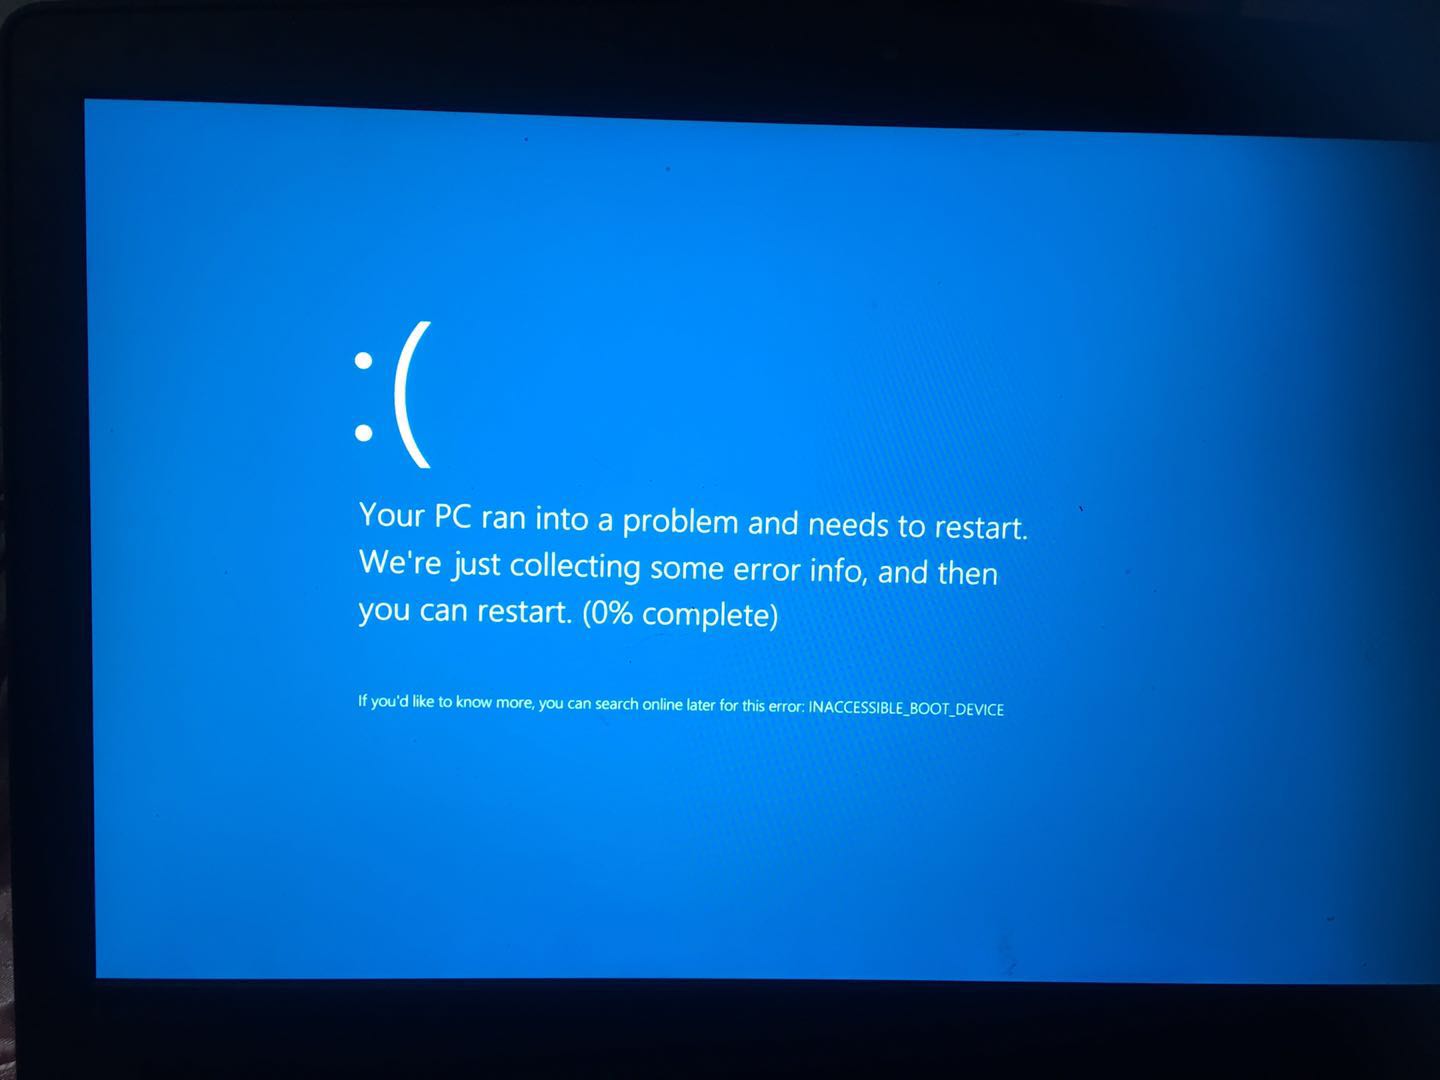 电脑蓝屏怎么办